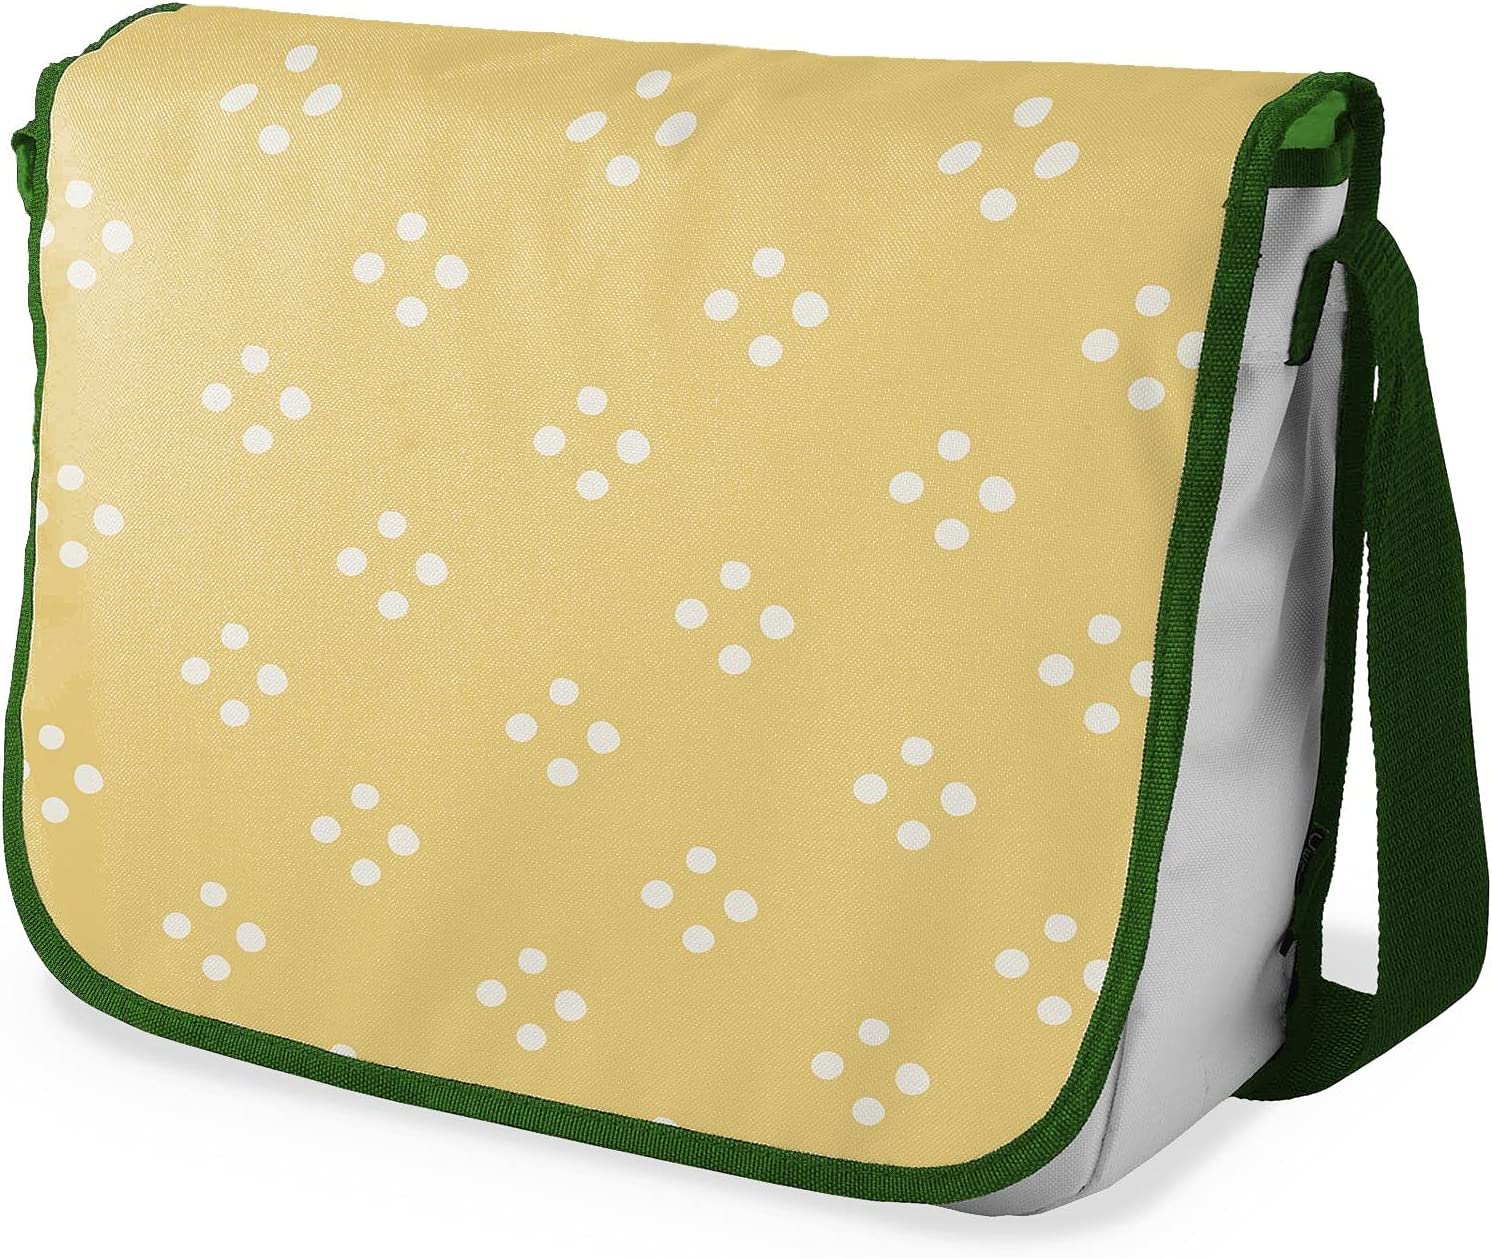 Bonamaison 4 White Dot Pattern Messenger School Bag w/ Khaki Strap RRP £16.74 CLEARANCE XL £10